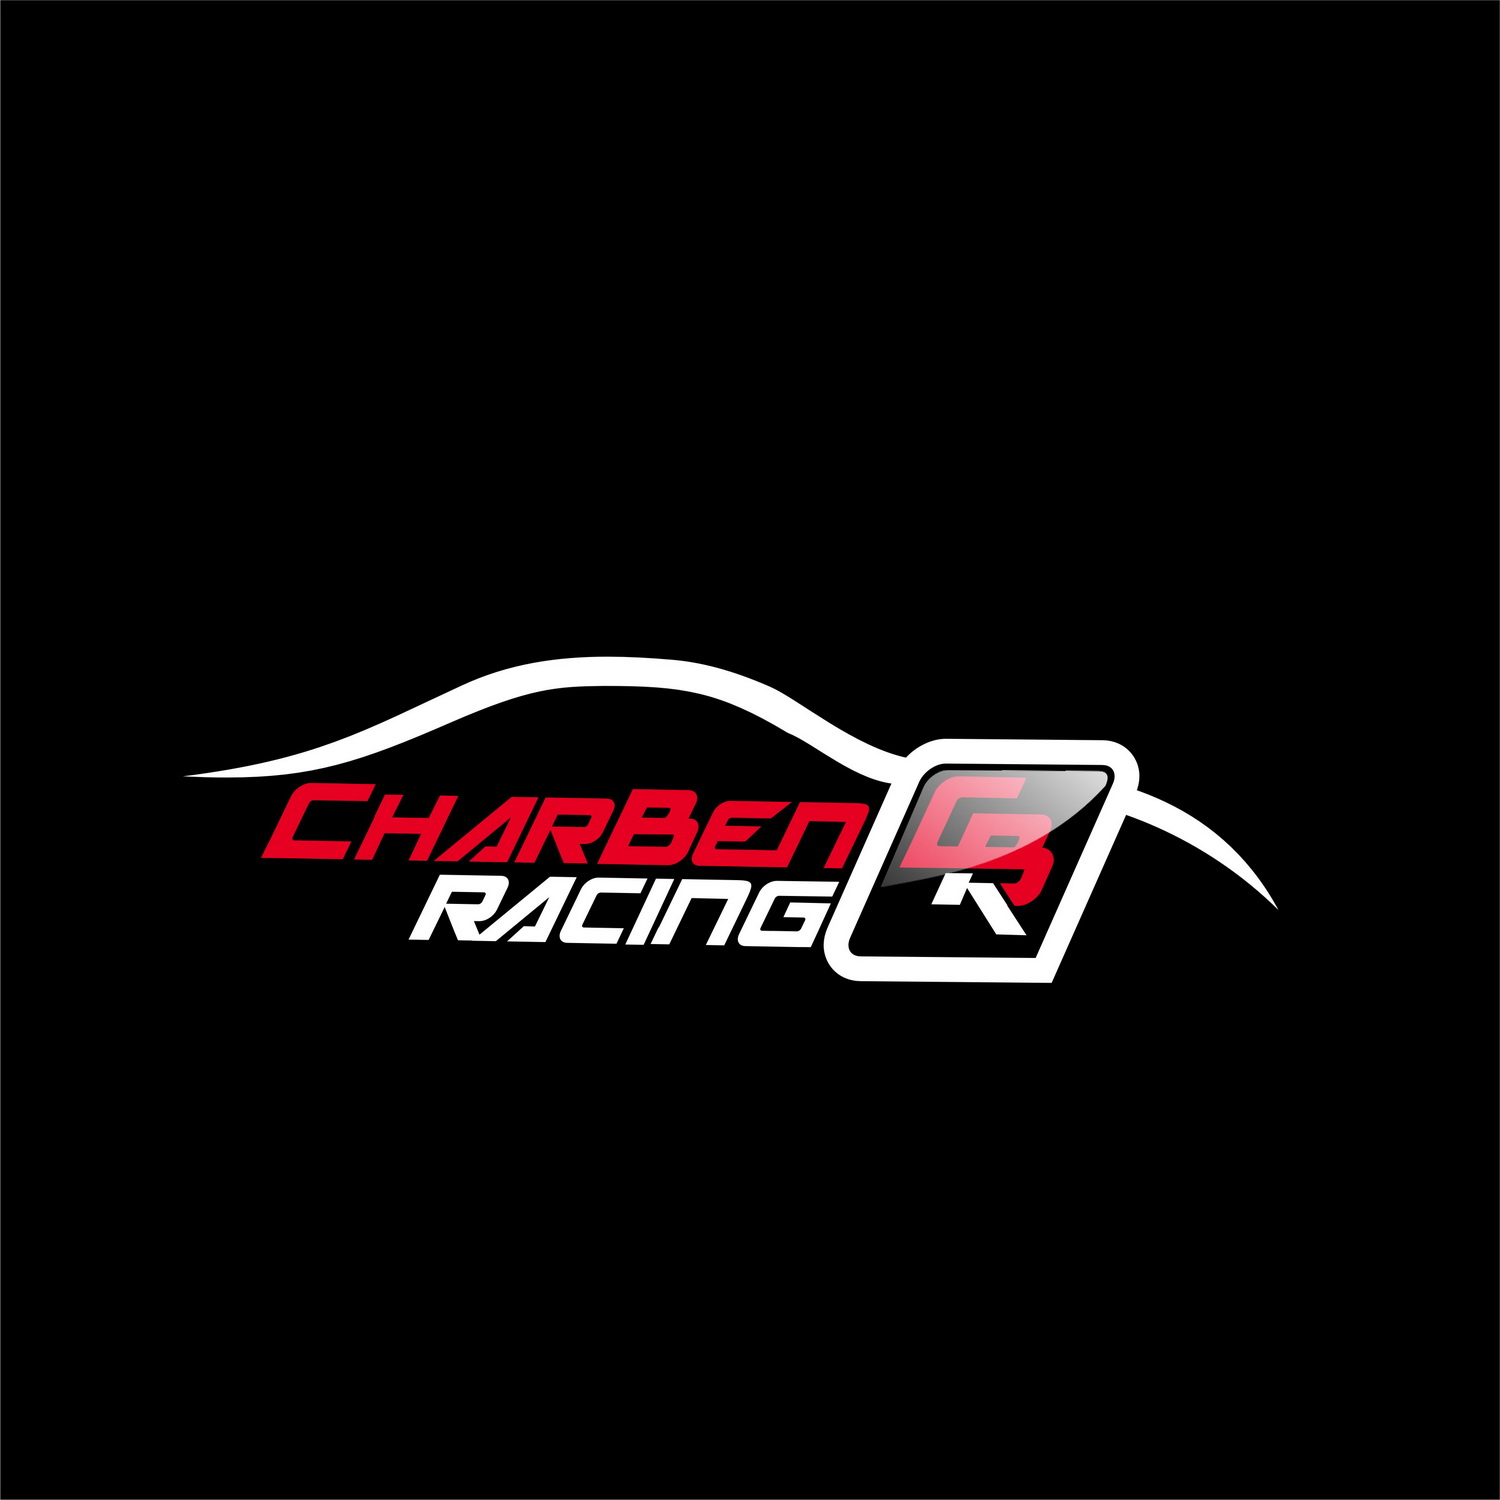 motorsport logo ideas 6